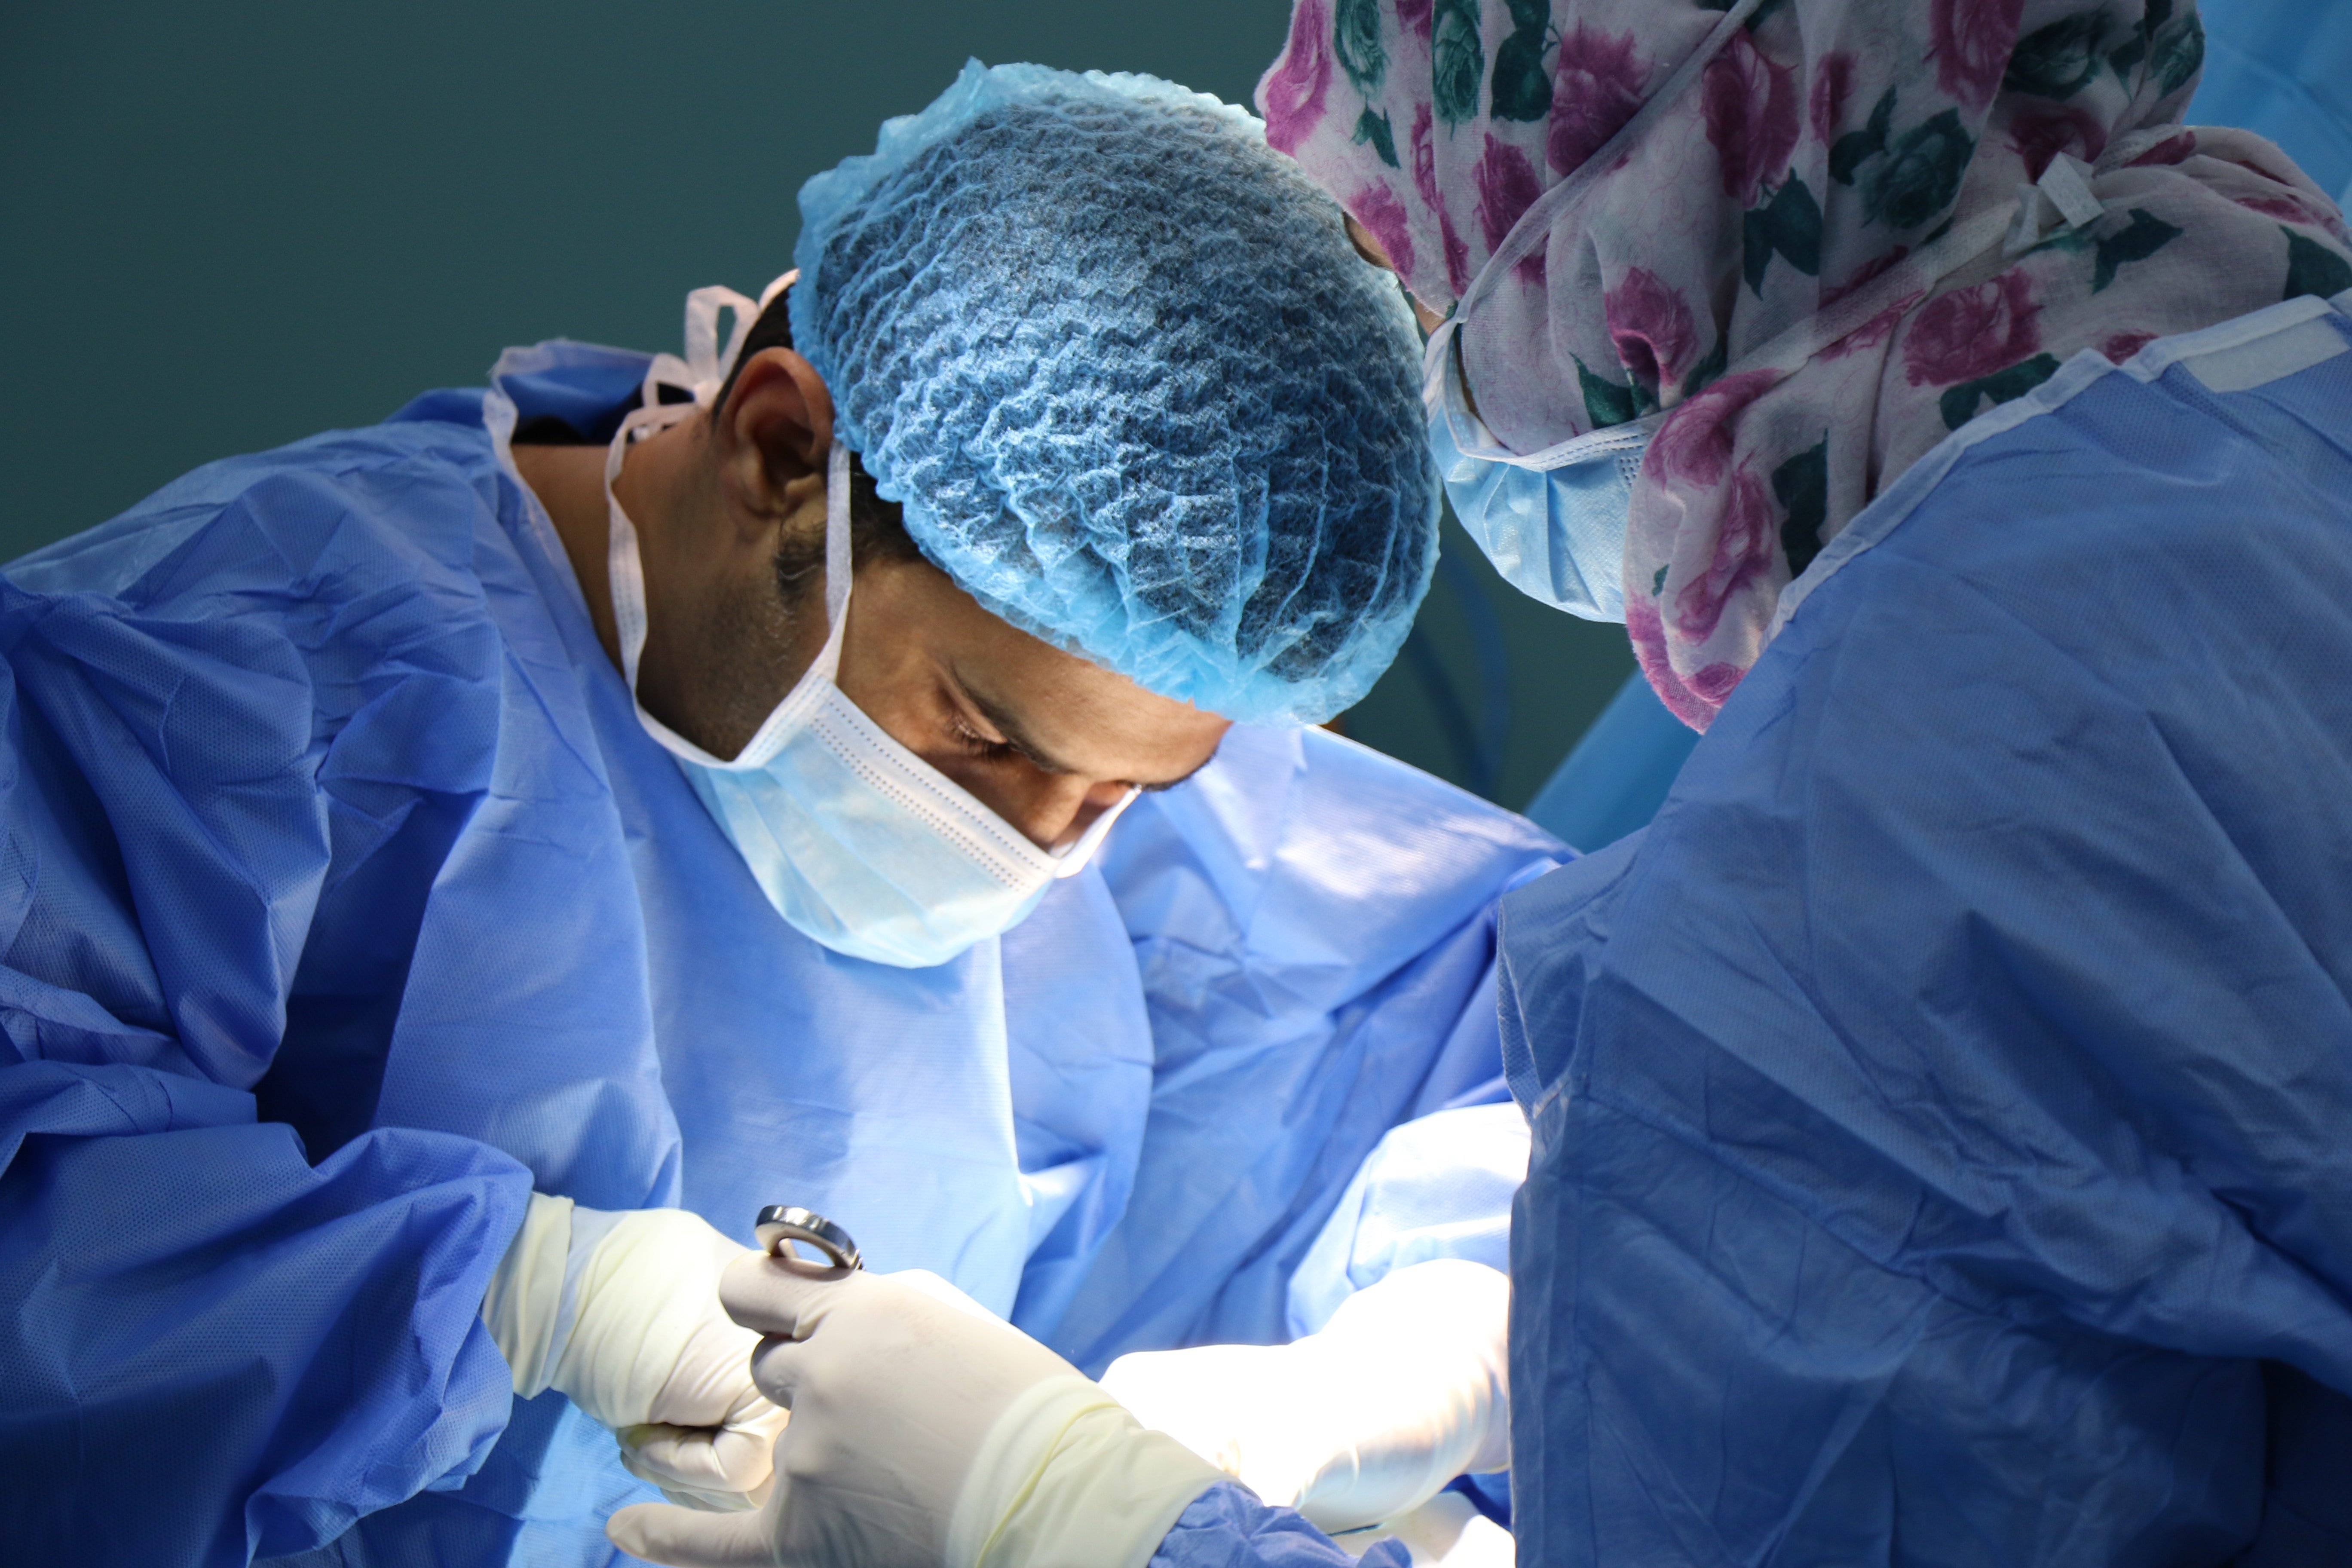 Doctors performing a medical procedure. | Source: Unsplash.com